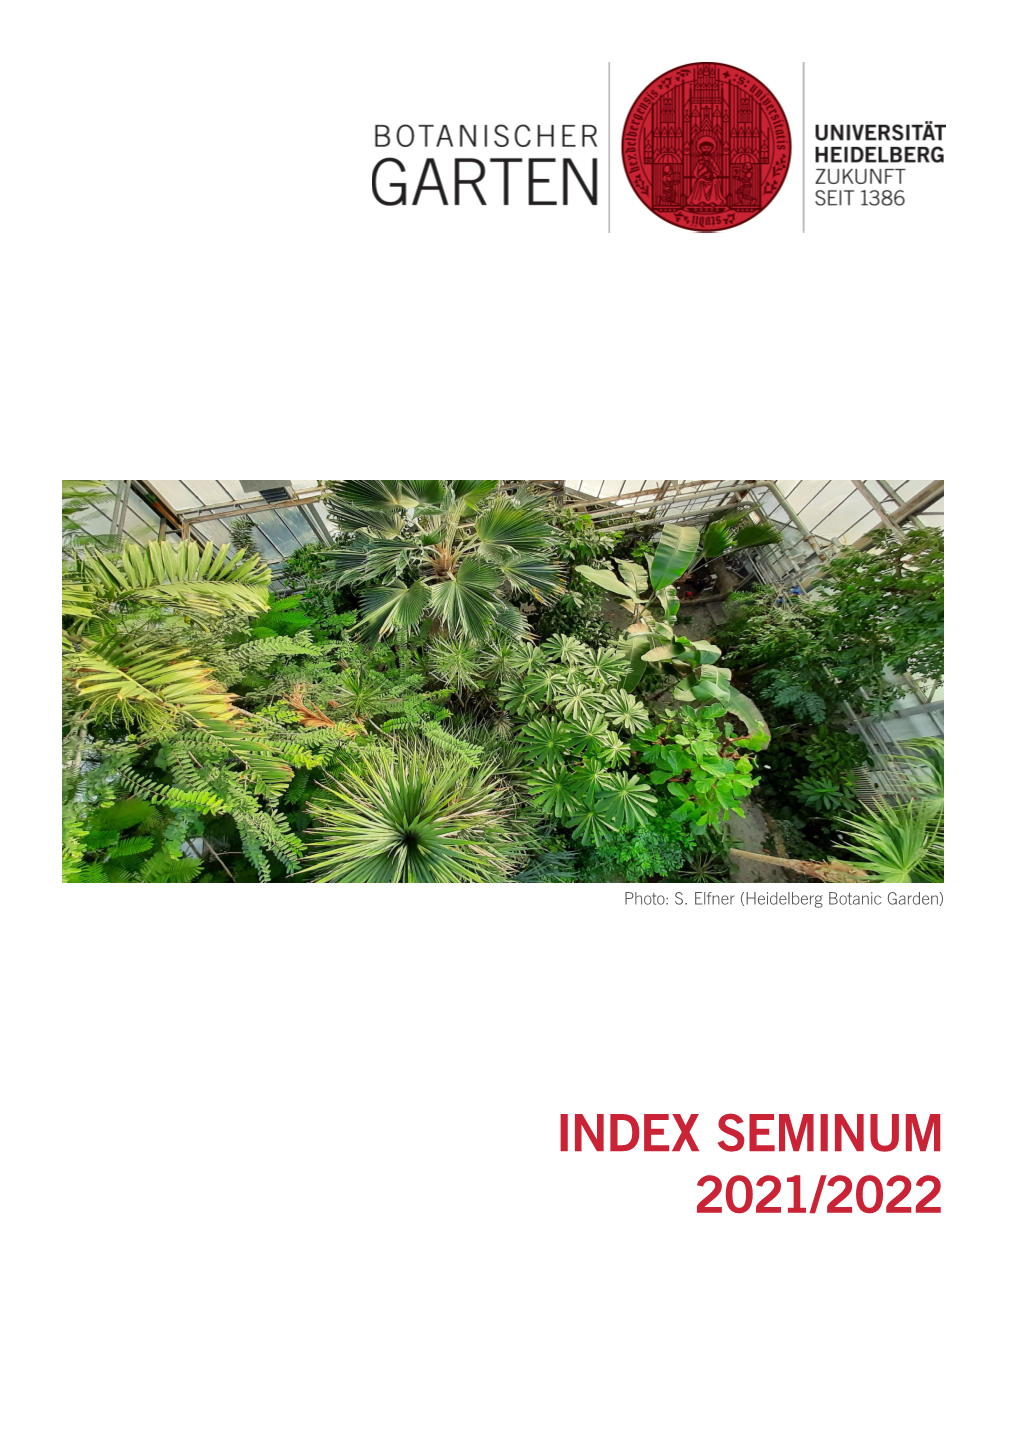 Index Seminum 2021/2022 Heidelberg University Botanic Garden – Index Seminum 2021/2022